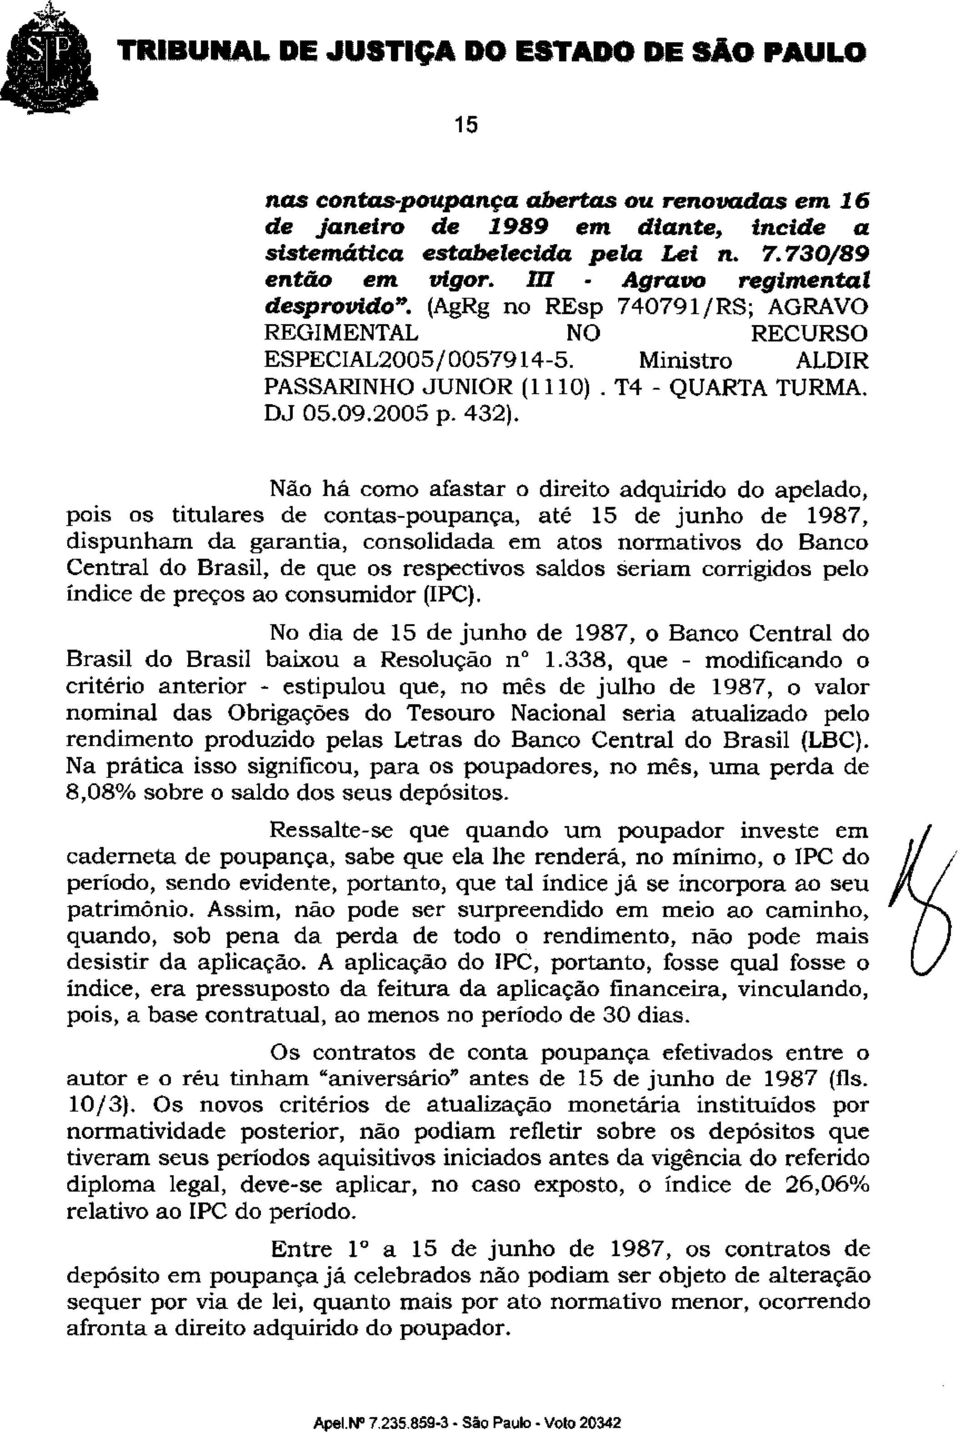 Não há como afastar o direito adquirido do apelado, pois os titulares de contas-poupança, até 15 de junho de 1987, dispunham da garantia, consolidada em atos normativos do Banco Central do Brasil, de